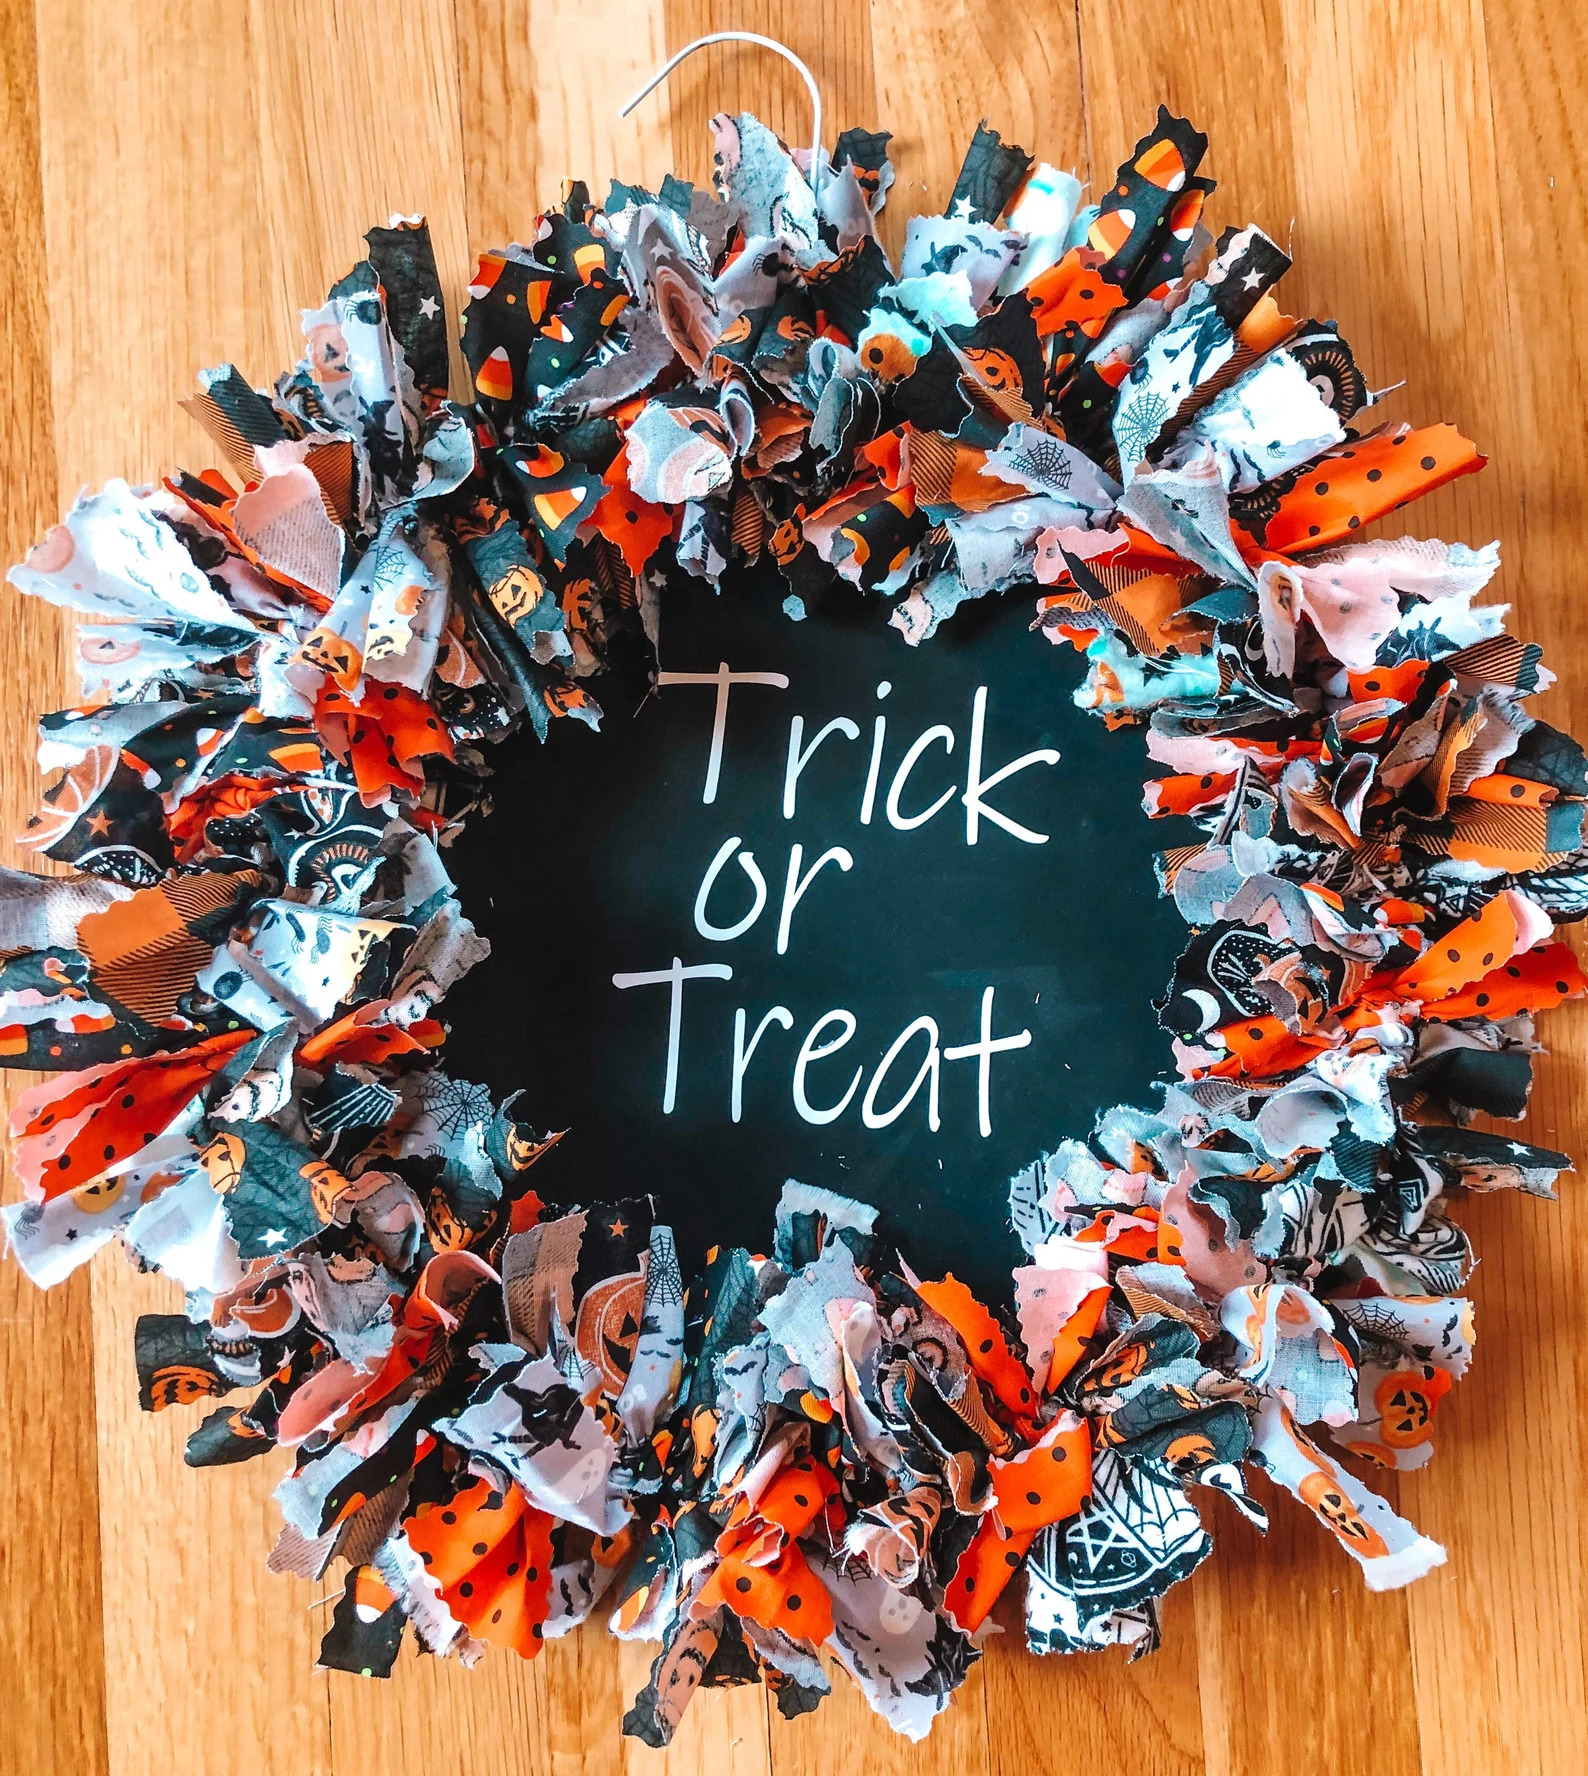 17 Spooky Halloween Wreath Designs For Your Front Door